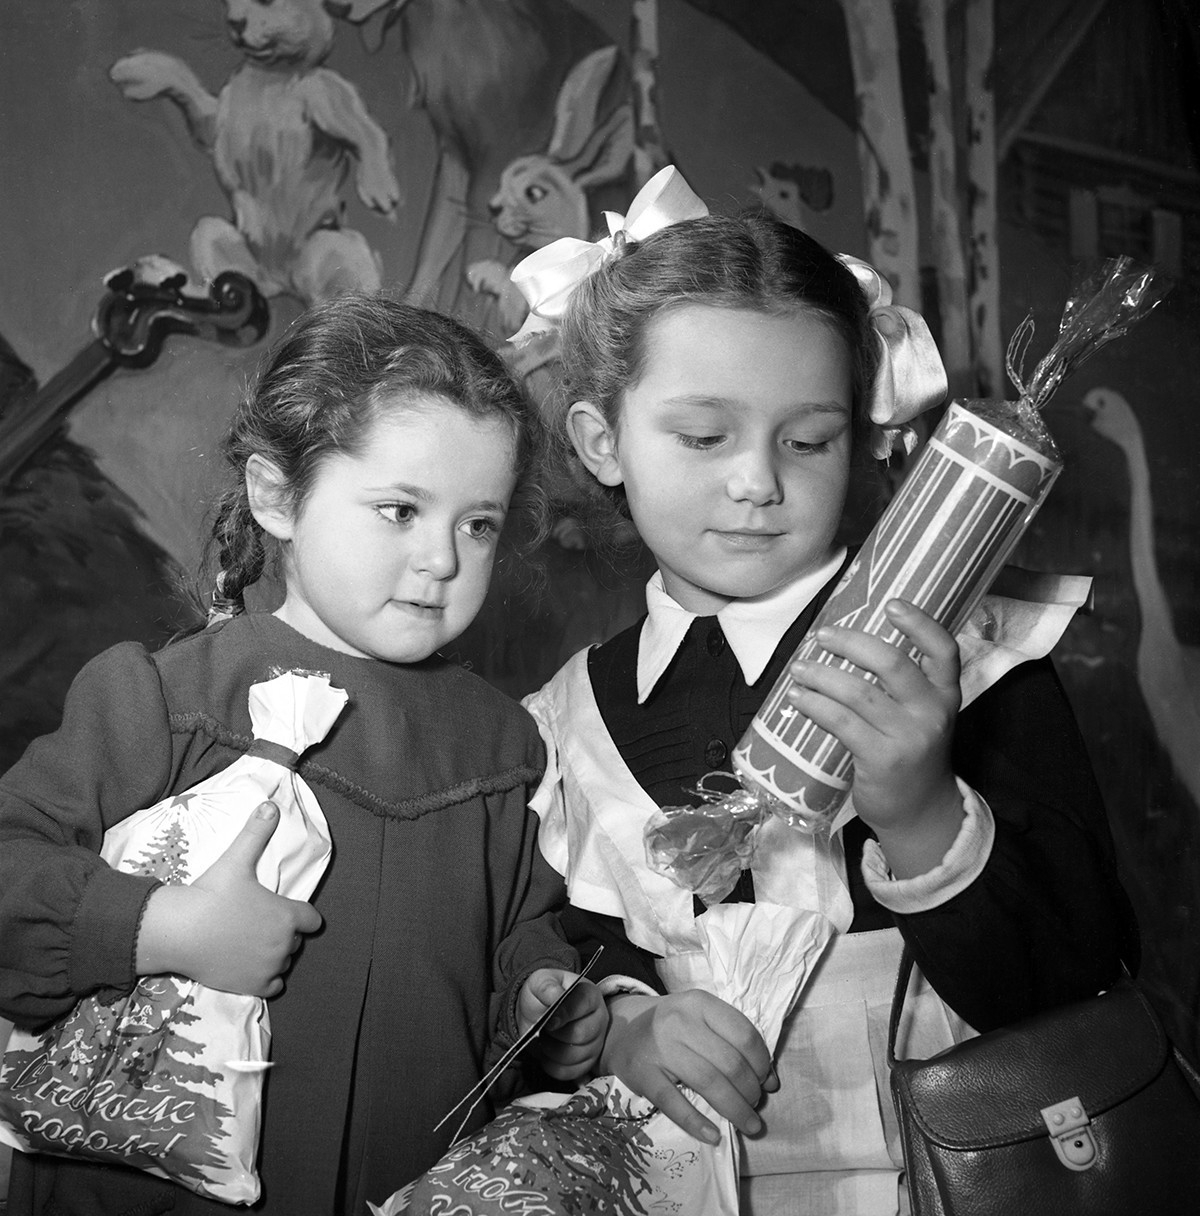 Ko je šlo za ideje za darila, je večina otrok mislila, da je sovjetski dedek Mraz vsemogočen.
